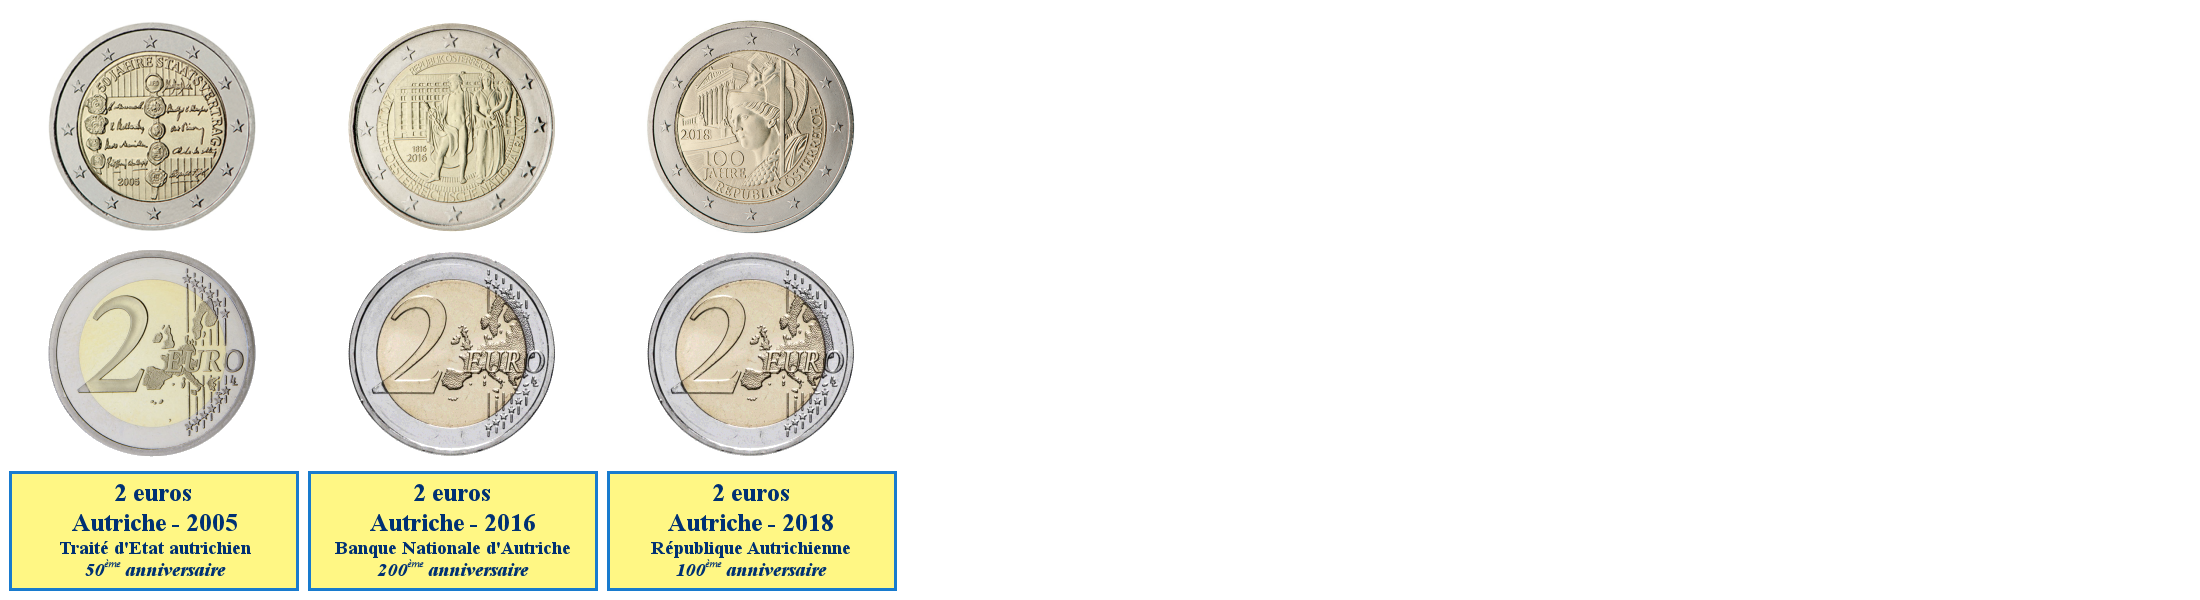 Photos de pièces de monnaies de 2 euros commémoratives autrichiennes